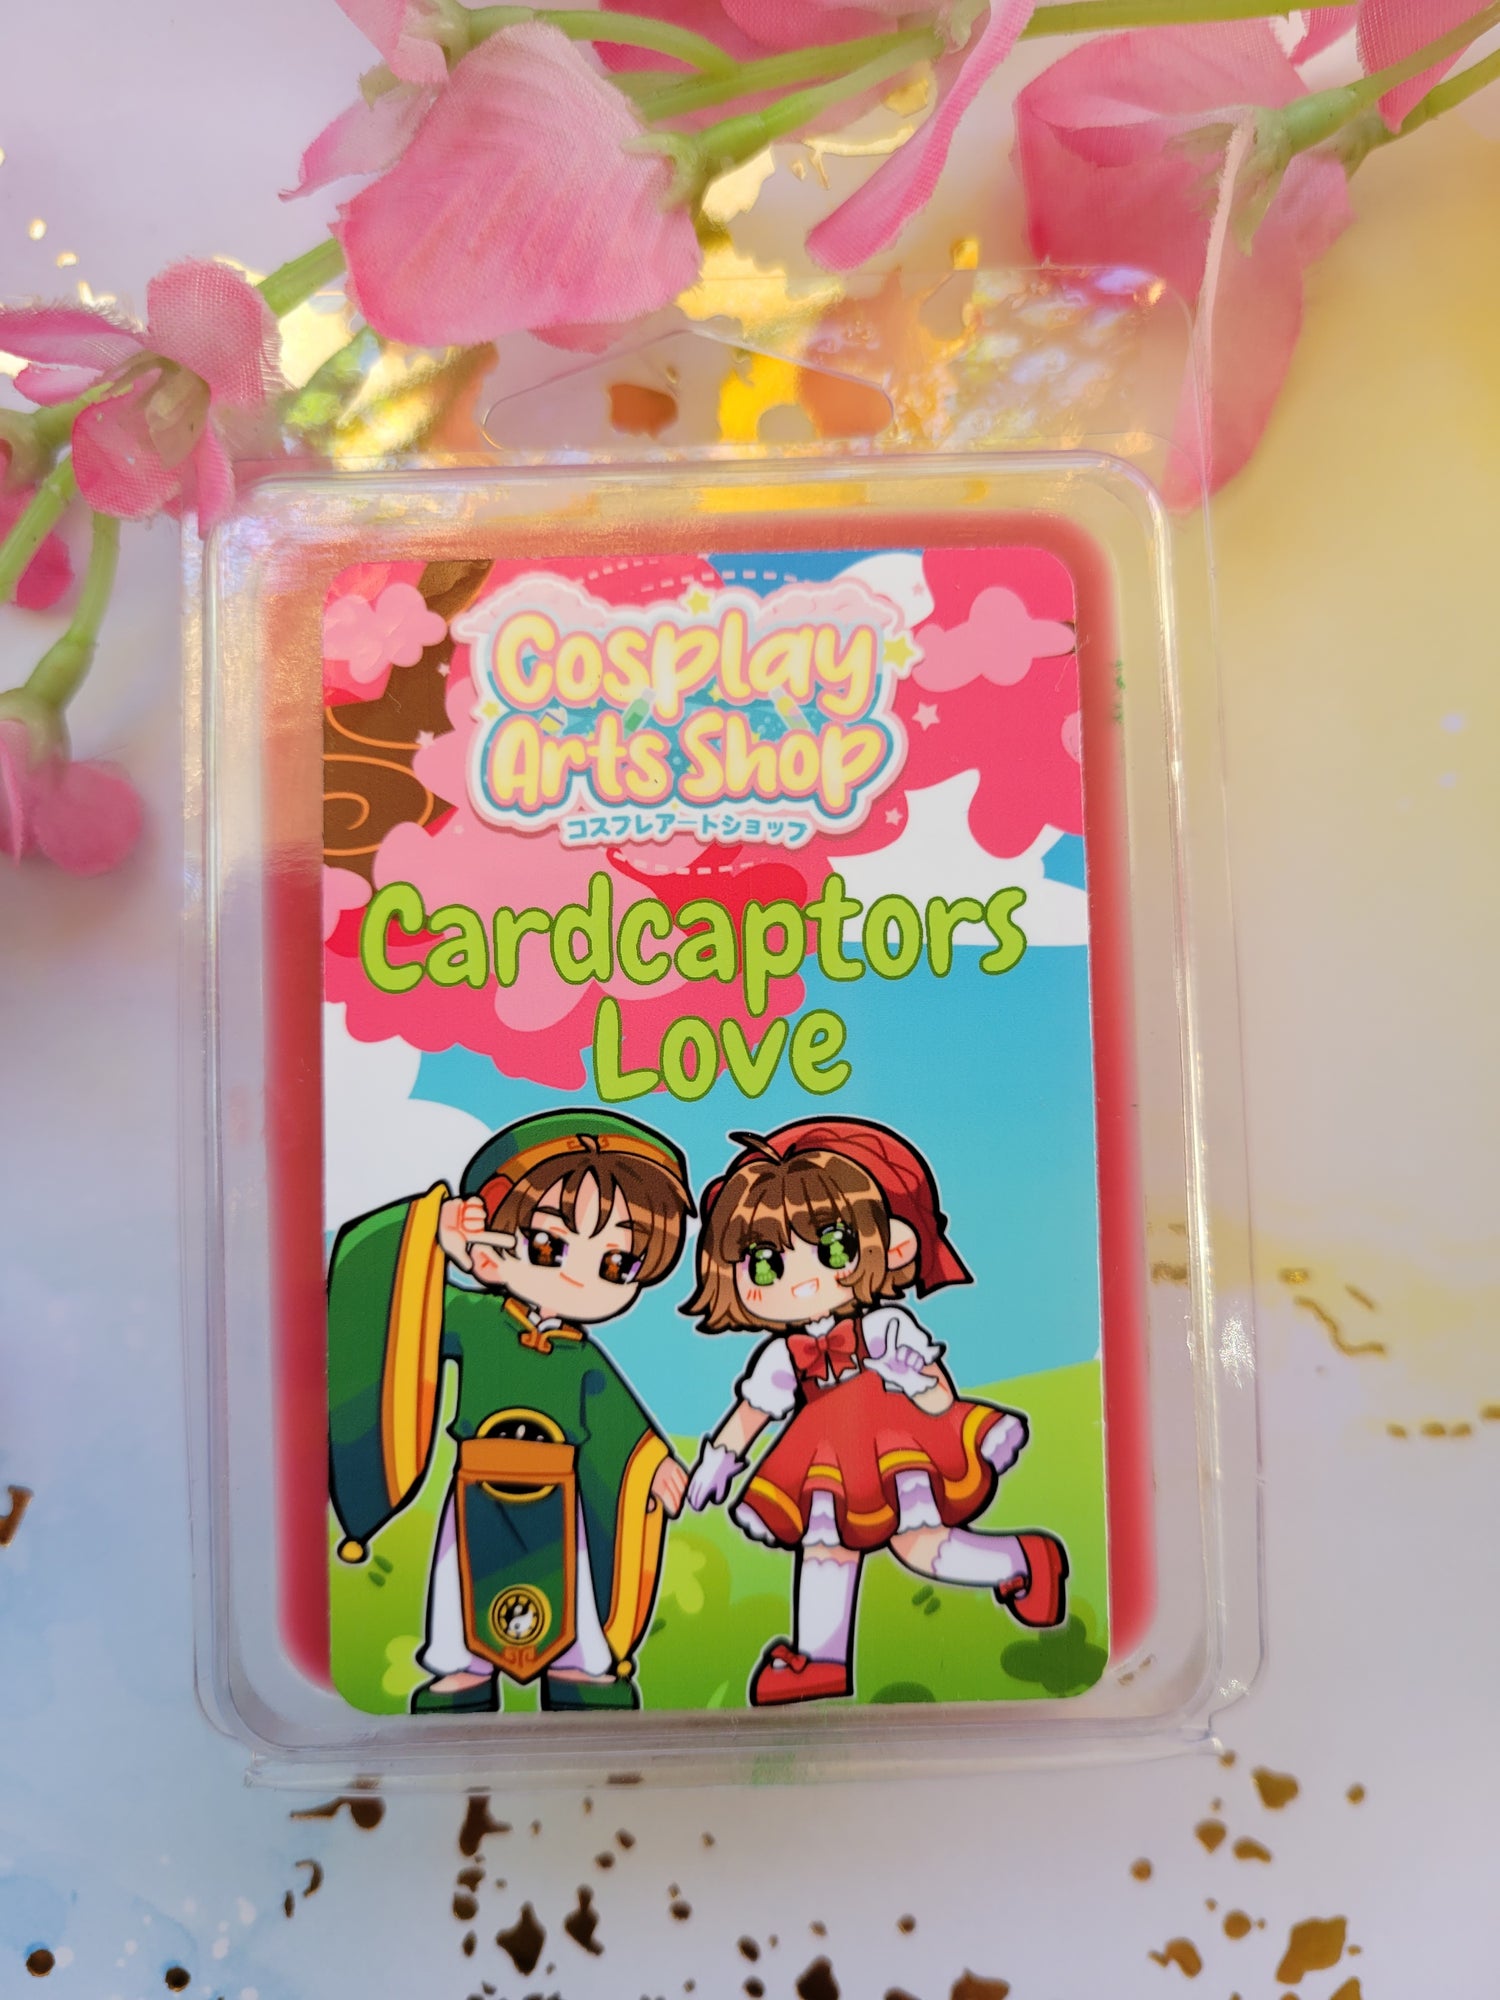 Cardcaptors Love Wax Melt - Cosplay Arts Shop